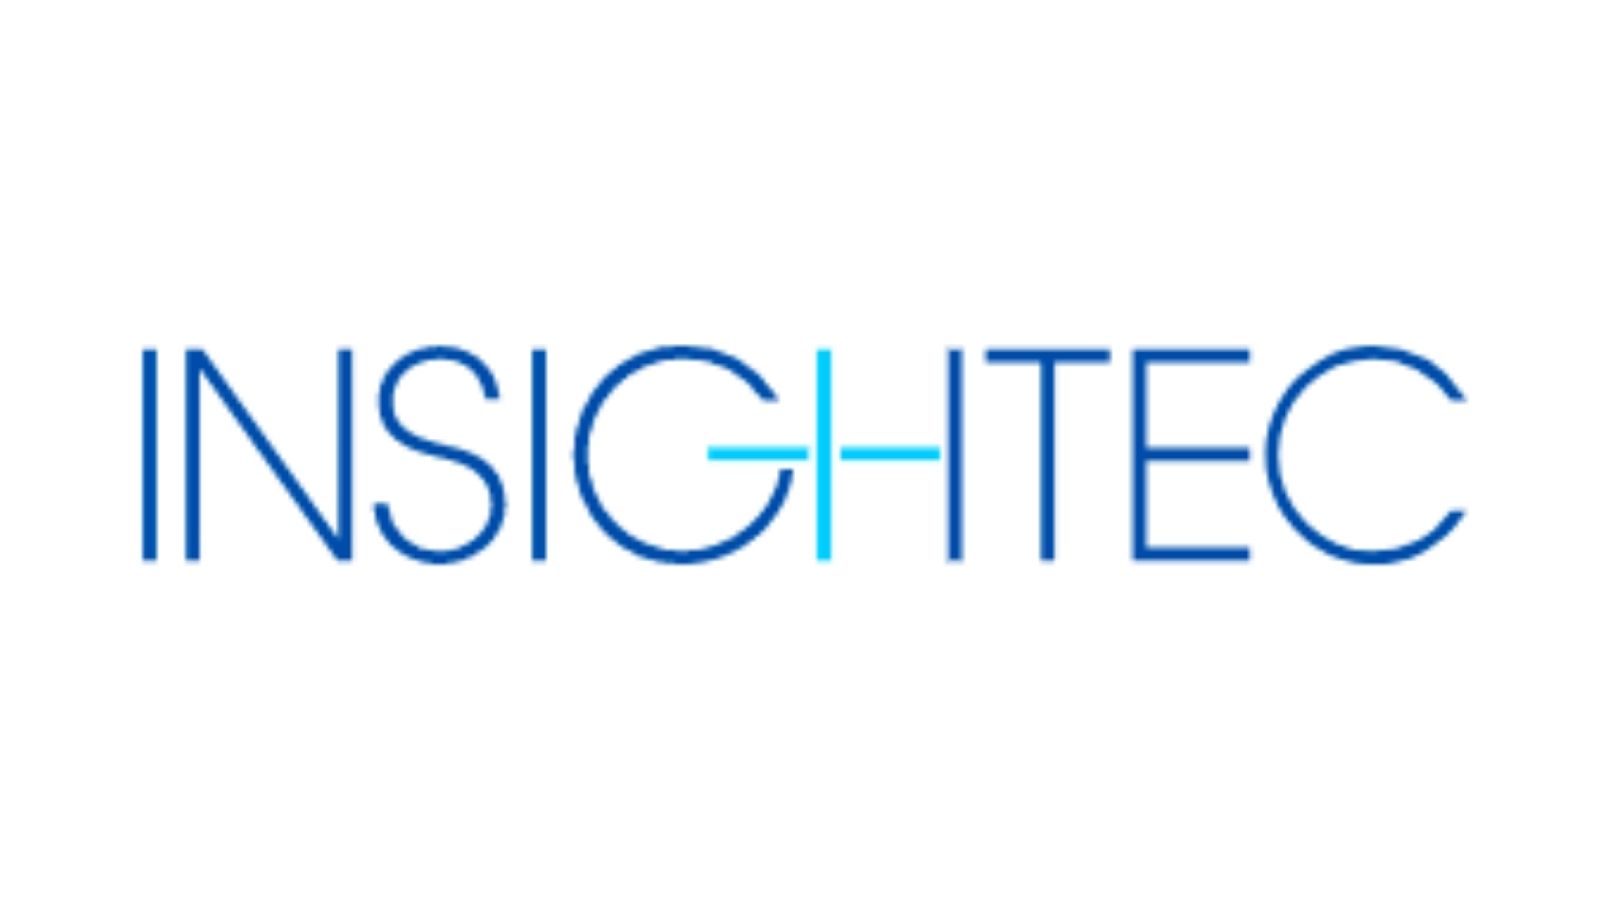 Insightec——为神经外科，肿瘤学和妇科学的各种适应症提供无创治疗